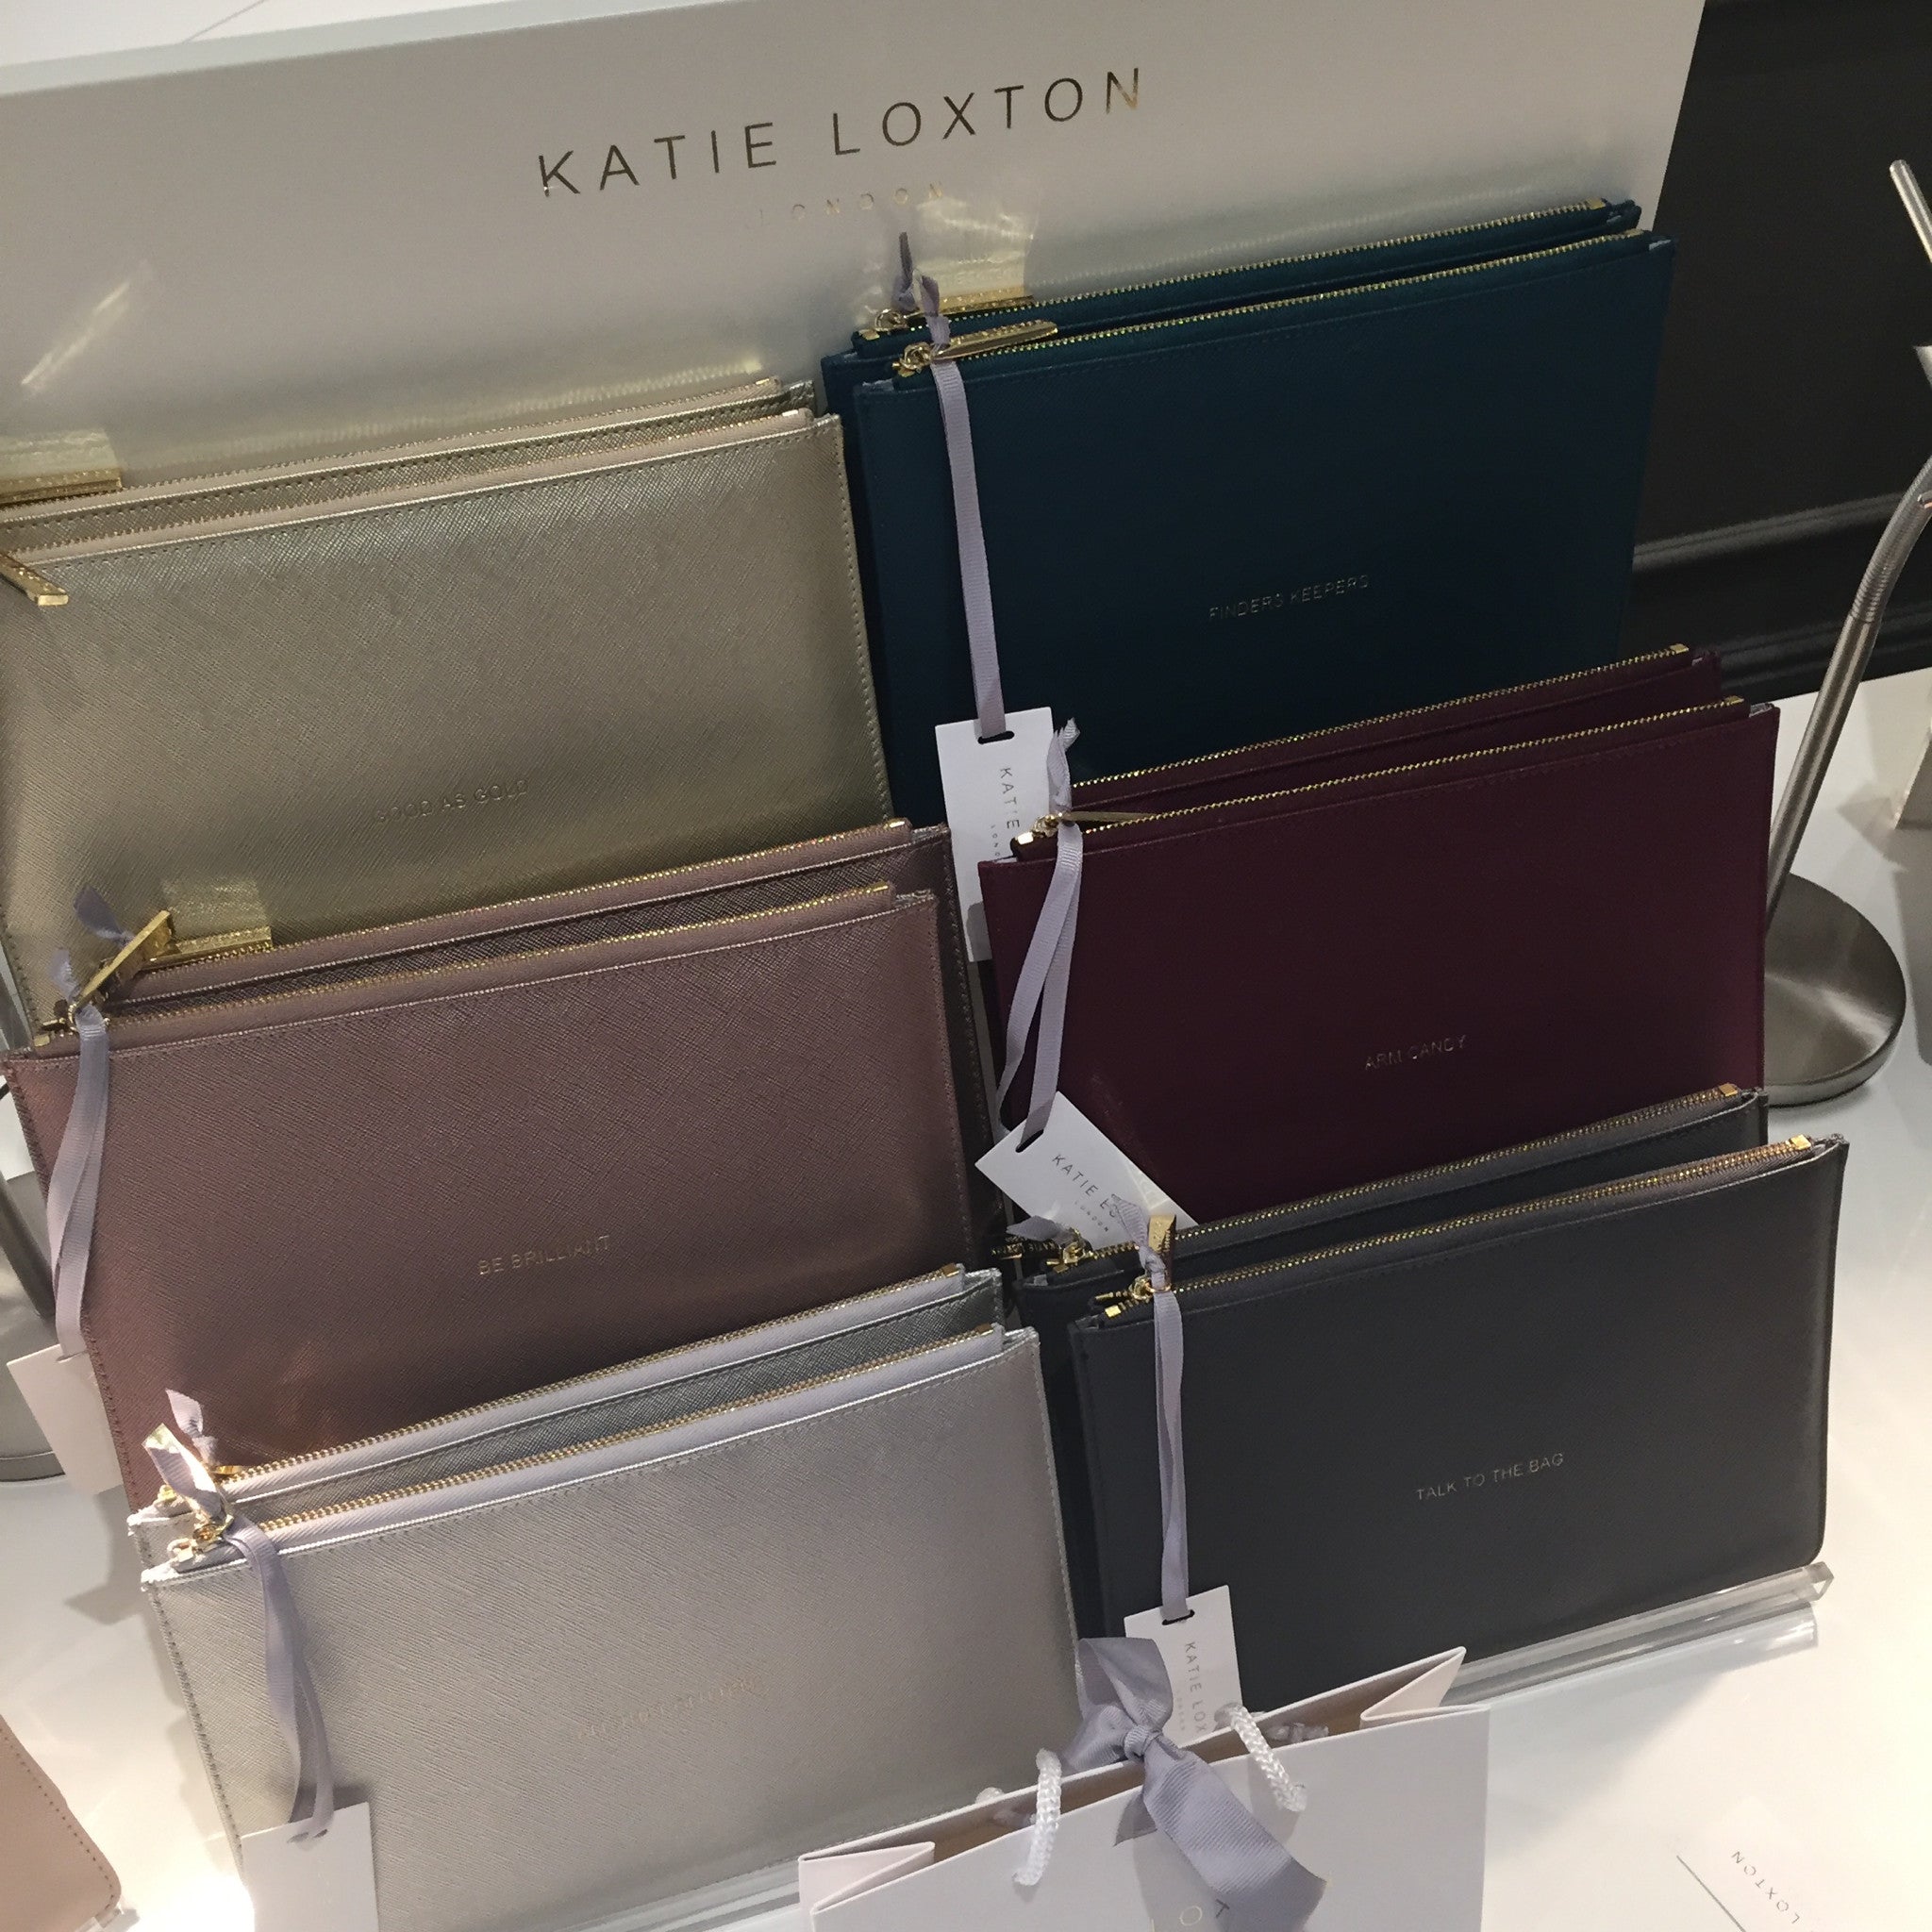 Katie Loxton Autumn/Winter 2016 Launch